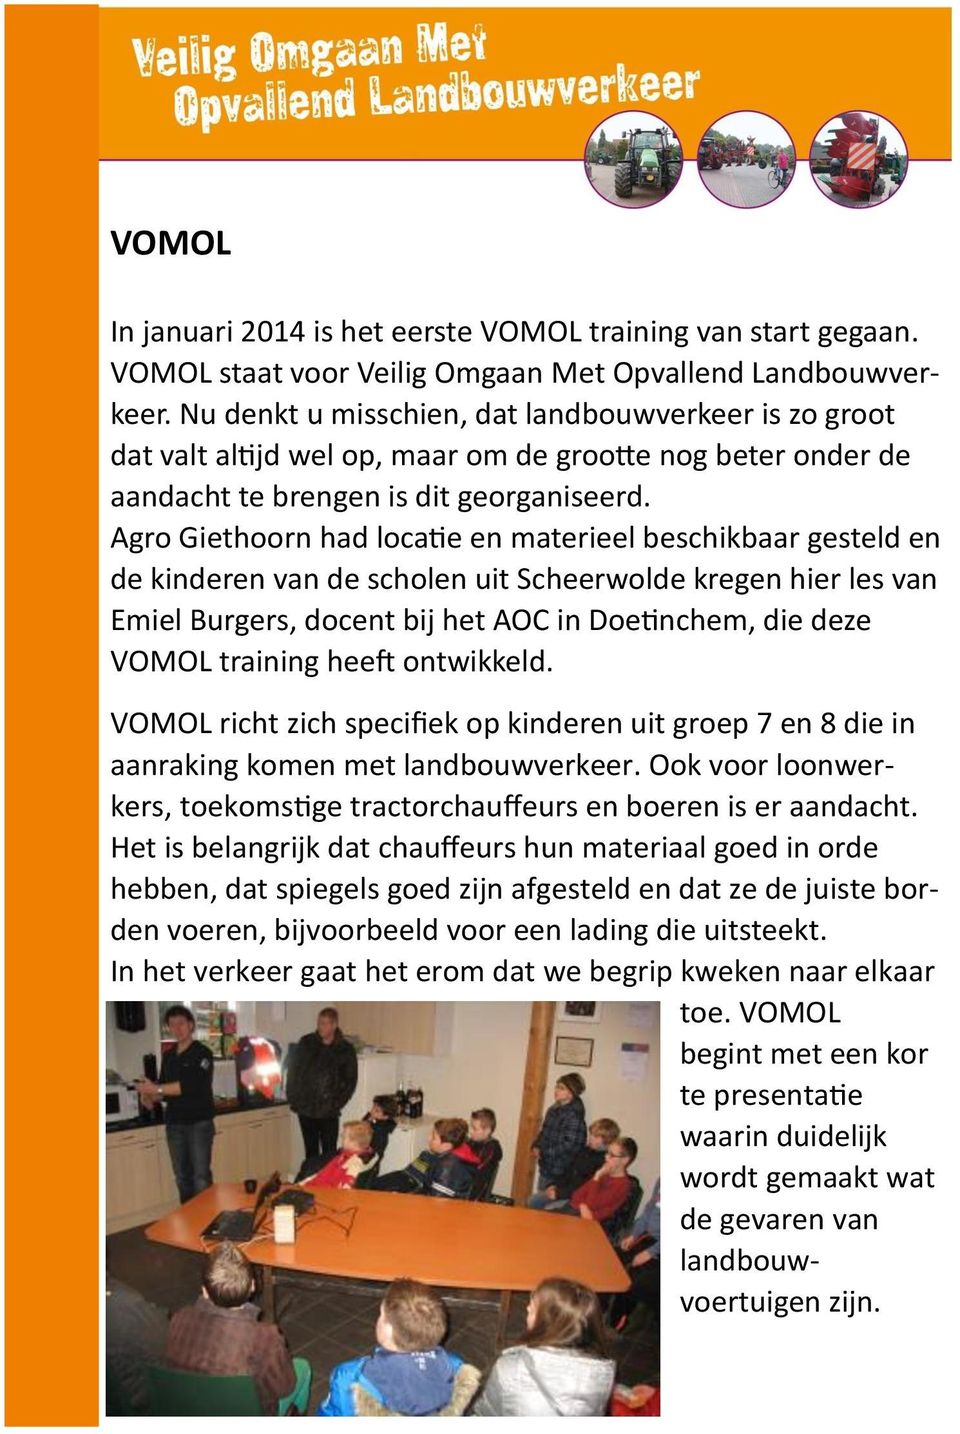 Agro Giethoorn had locatie en materieel beschikbaar gesteld en de kinderen van de scholen uit Scheerwolde kregen hier les van Emiel Burgers, docent bij het AOC in Doetinchem, die deze VOMOL training